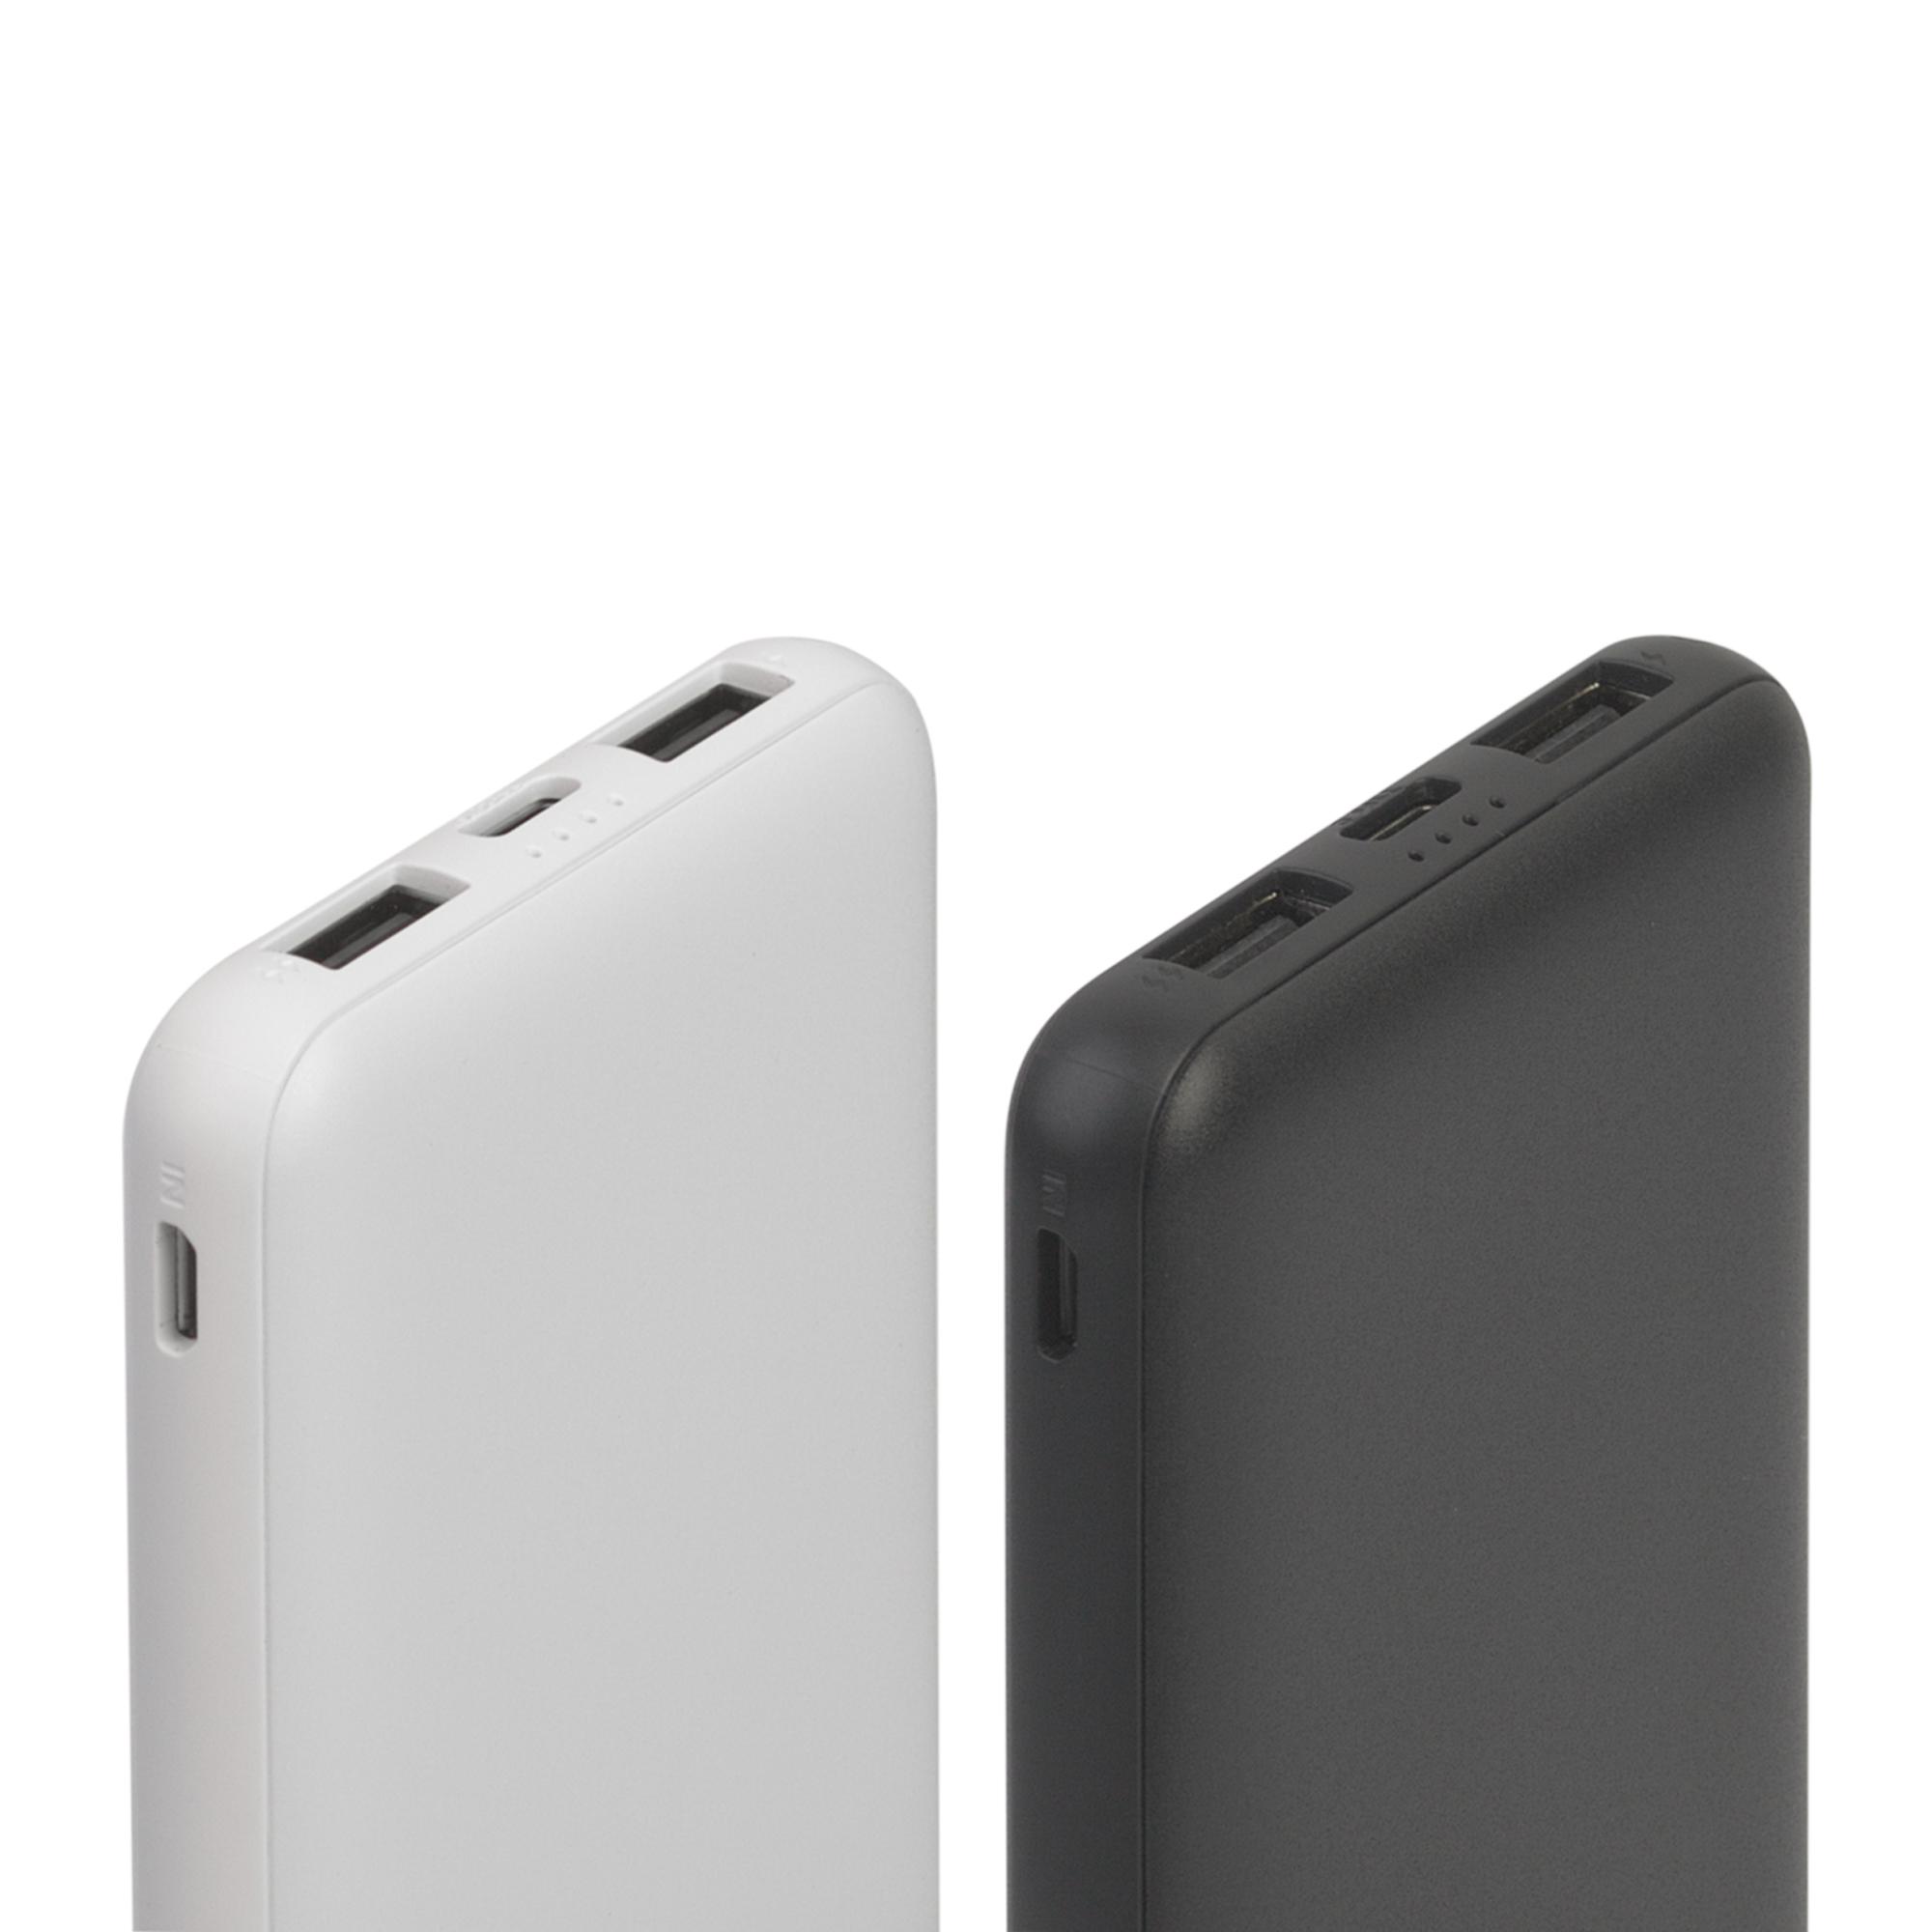 Зарядное устройство "Compact", 5000 mAh, цвет черный, фото 3